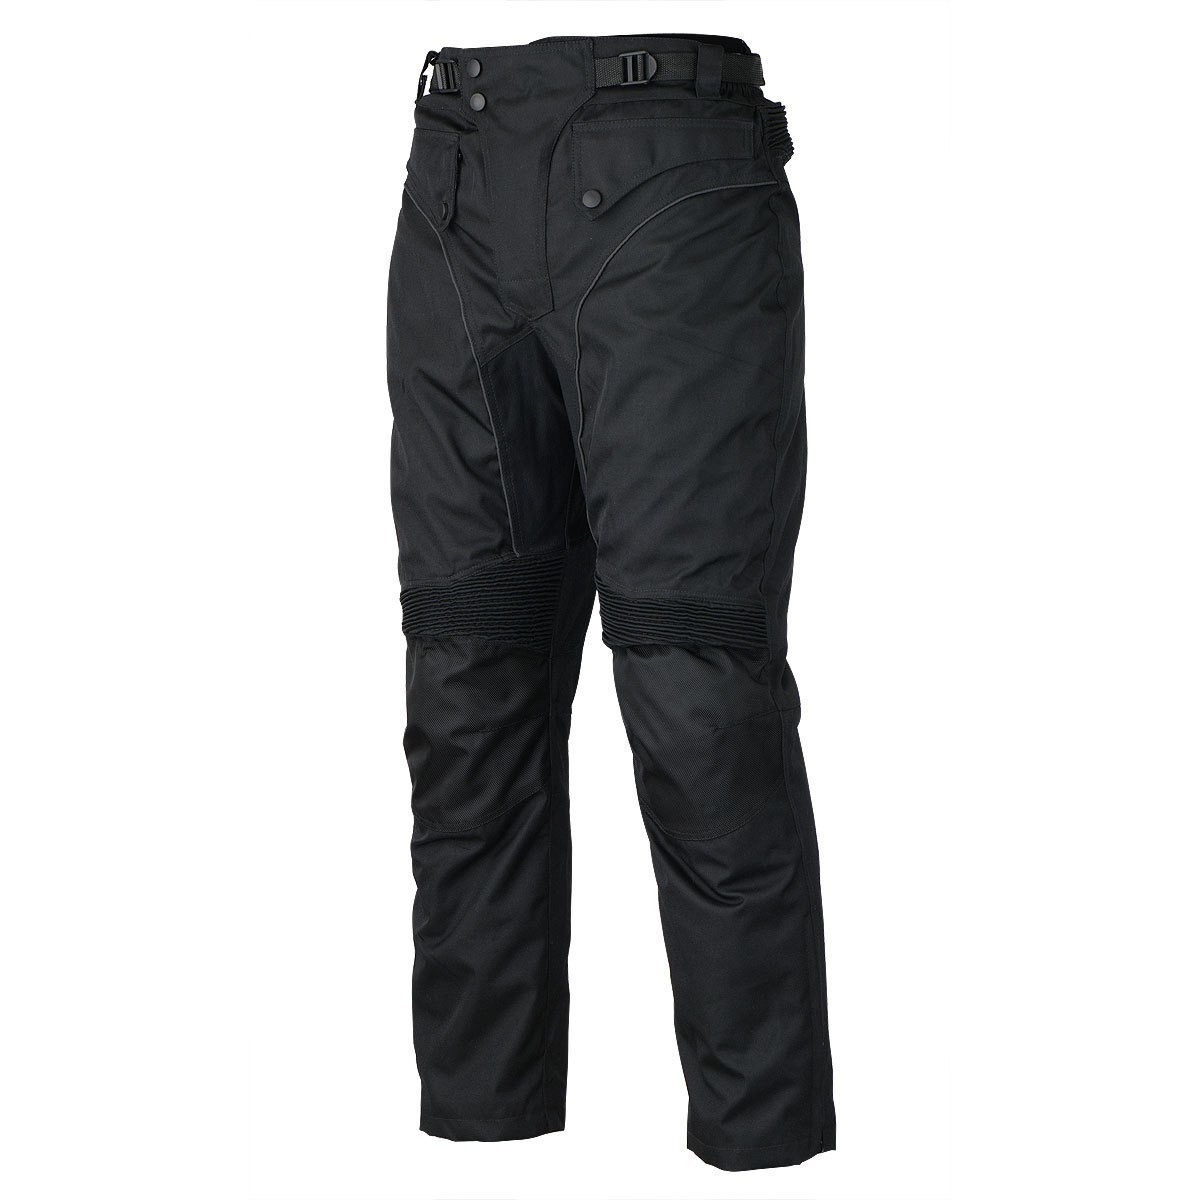 Motorcycle Pants for Men-Dual Sport Dirt Bike Gear Pants-Motorcycle Riding  Pants-Waterproof Motorcycle Armor Protective Black